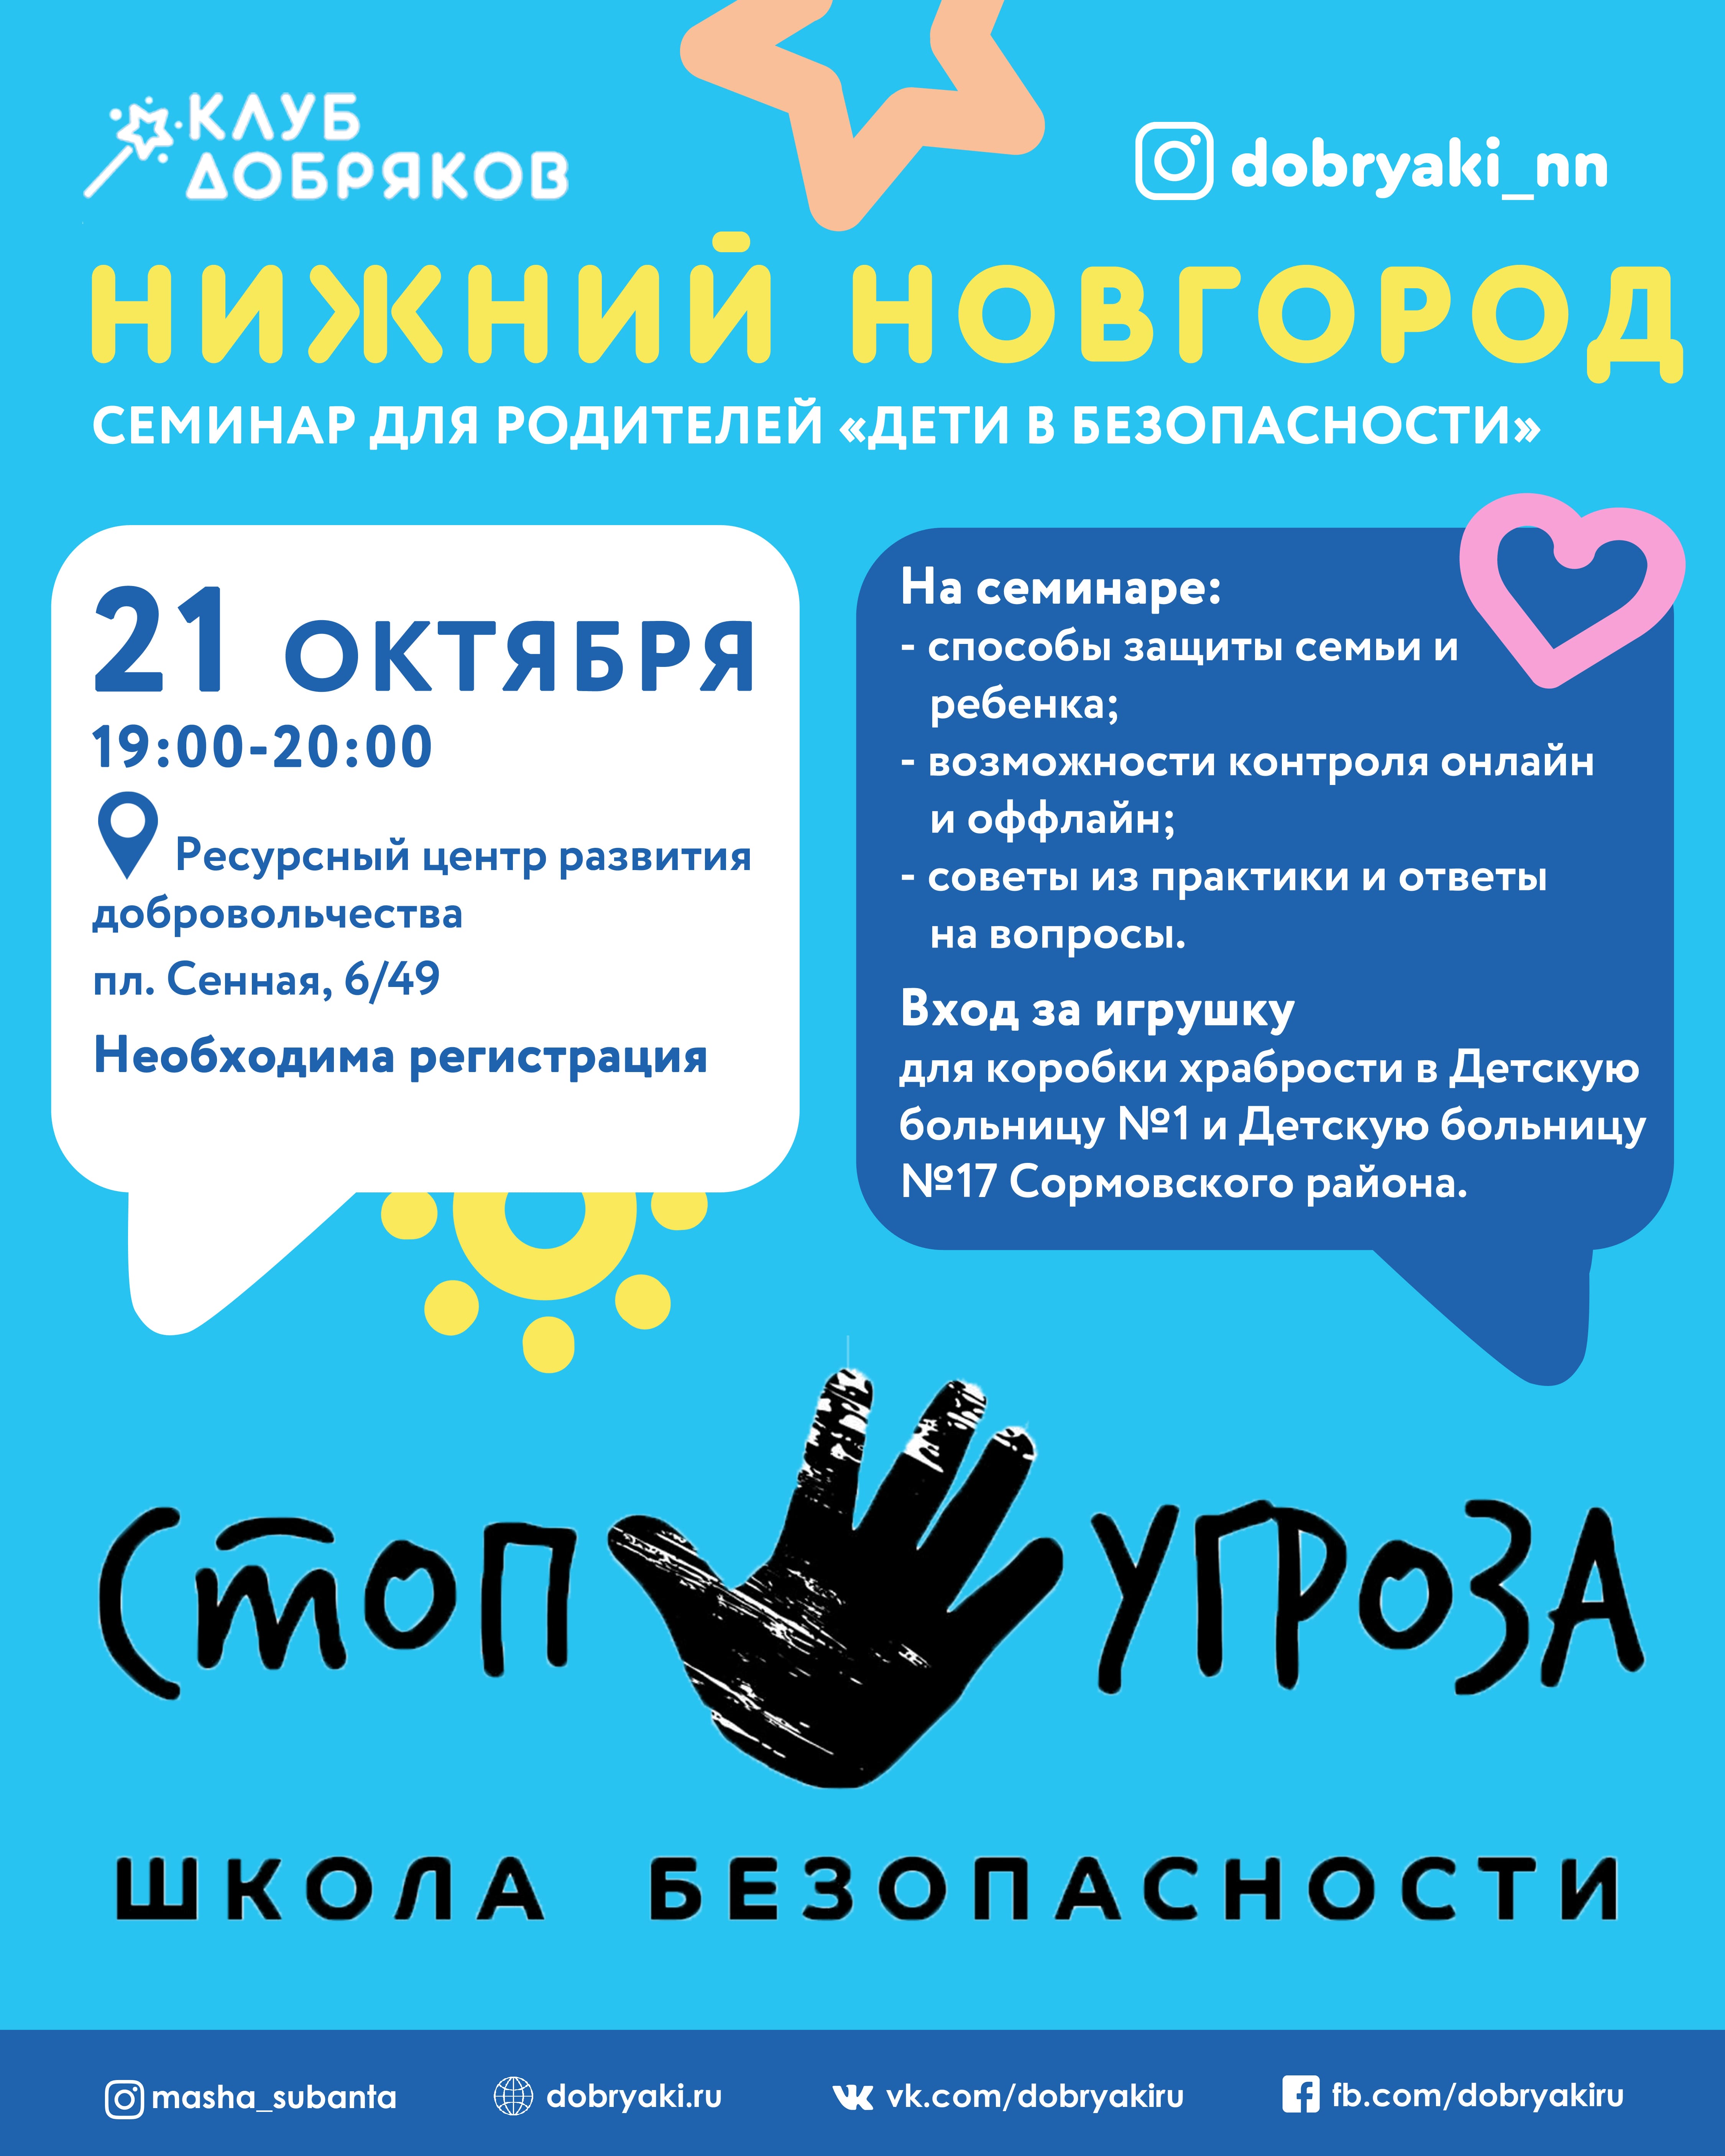 В Нижнем Новгороде пройдет семинар для родителей о детской безопасности